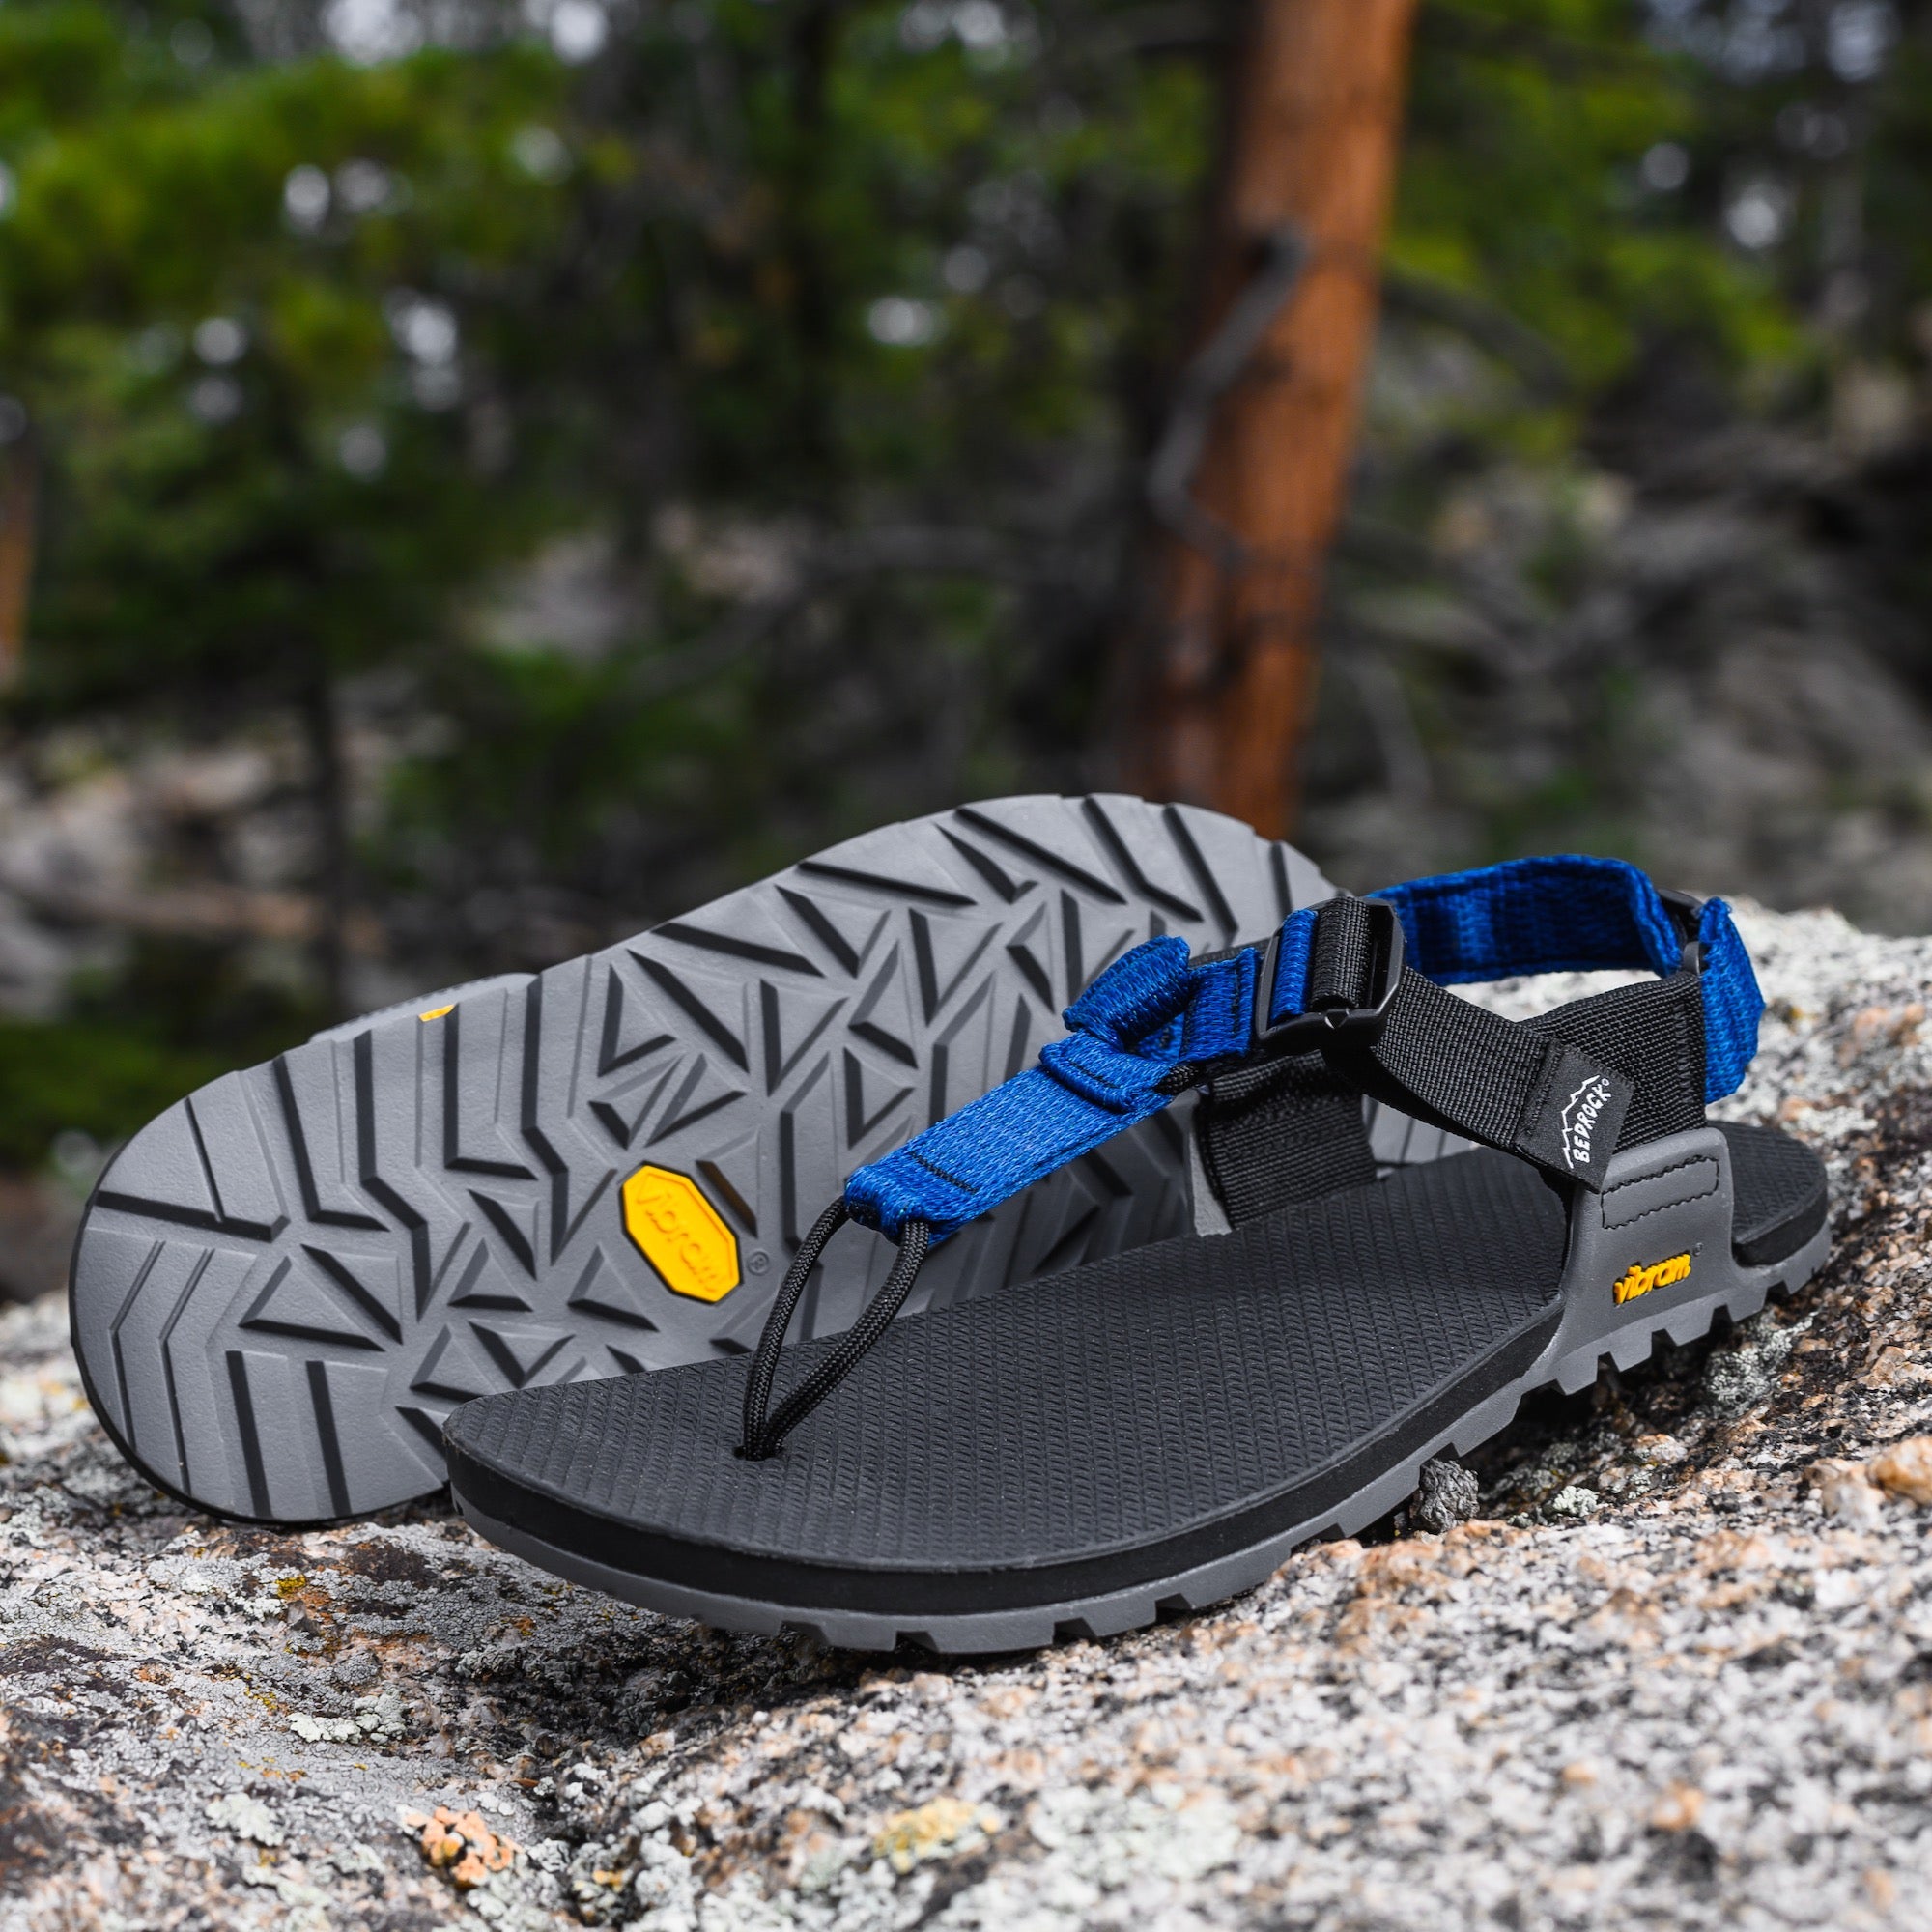 Cairn Pro II Adventure Sandals